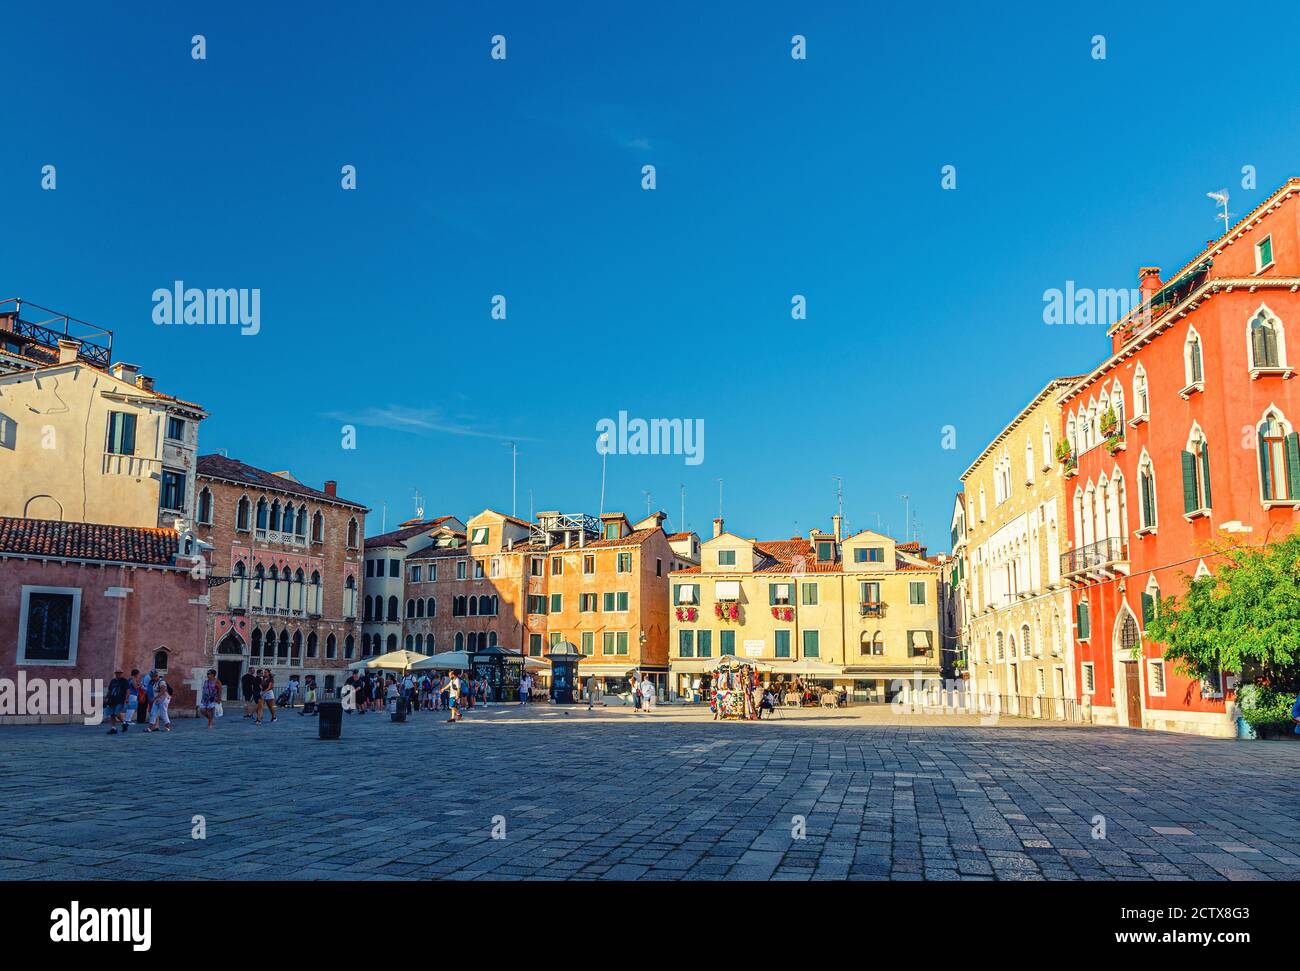 Venise, Italie, 13 septembre 2019 : place Campo San Anzolo Sant'Angelo avec des bâtiments typiquement vénitiens et des personnes à pied dans le centre-ville historique de San Marco Sestiere, région de Vénétie Banque D'Images